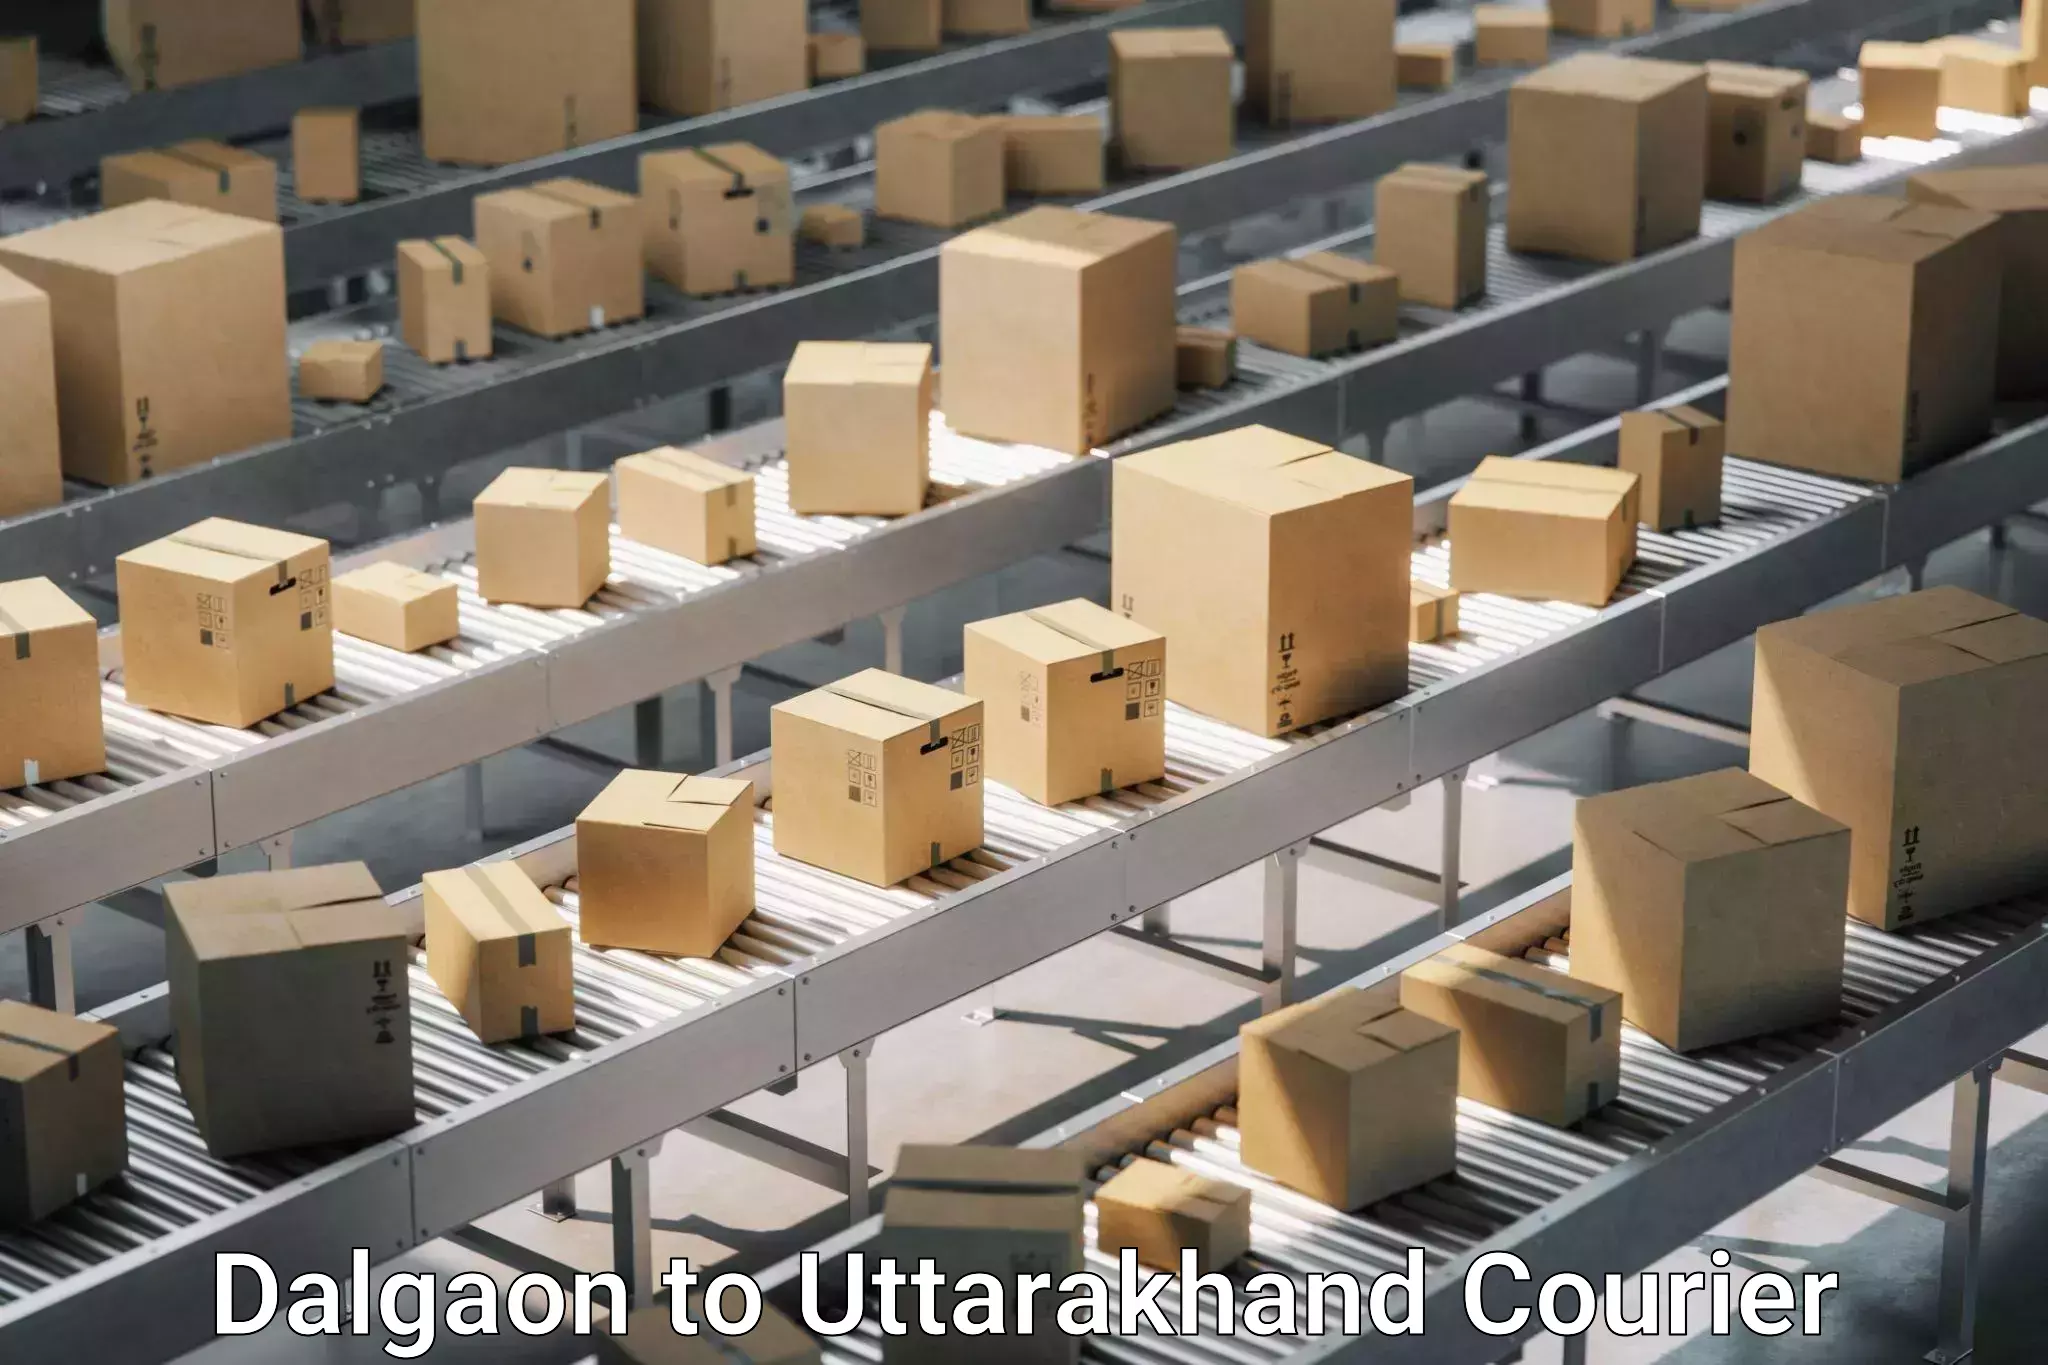 Furniture transport experts Dalgaon to Uttarakhand